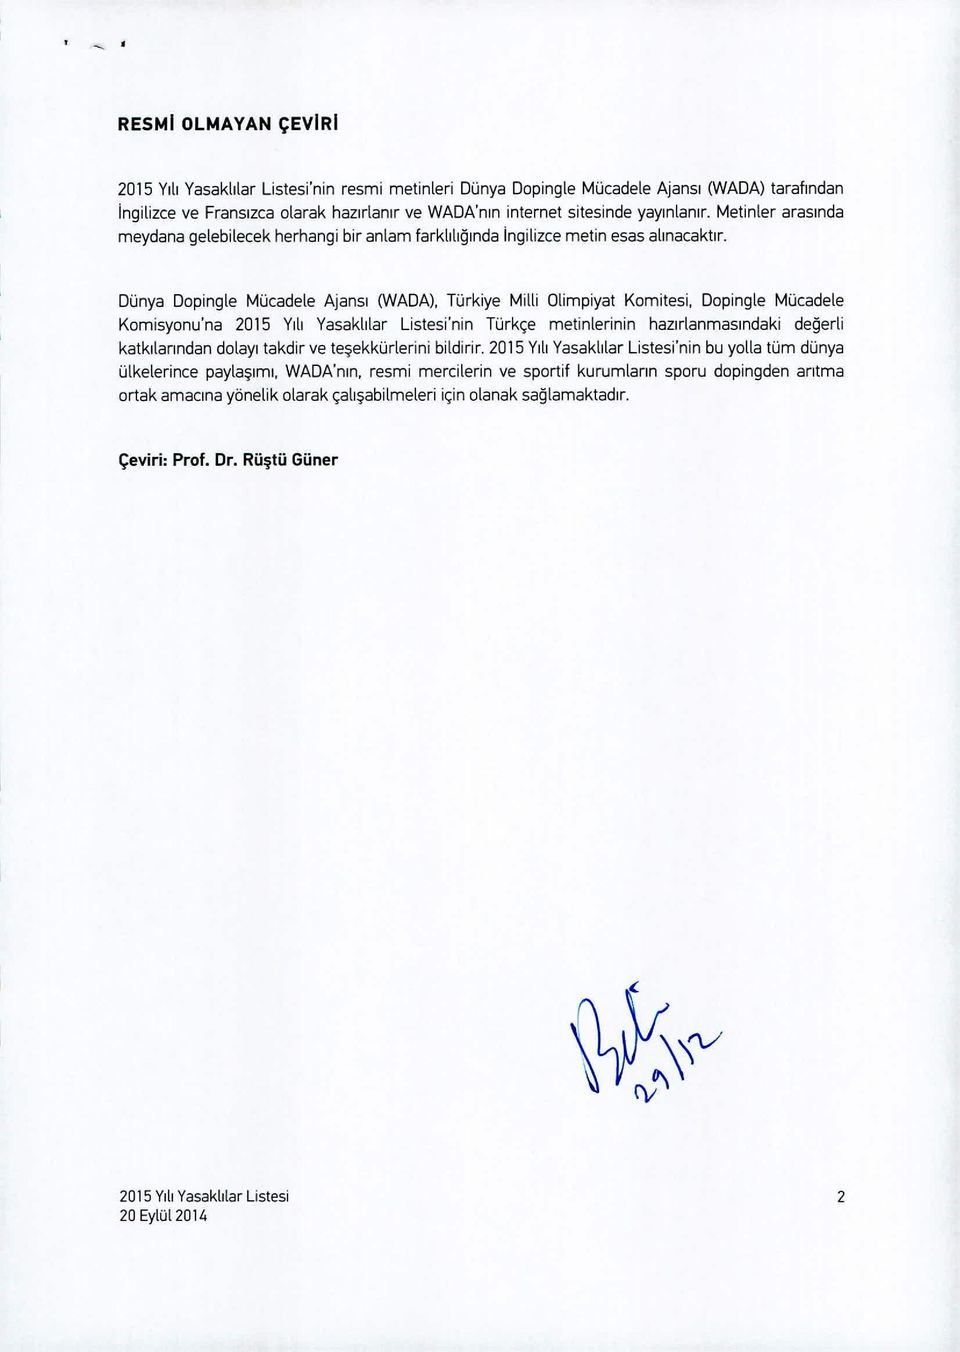 Dünya Dopingle Mücadele Ajansı 0NADA), Türkiye Milli Olimpiyat Komitesi, Dopingle Mücadele Komisyonu'na 2015 Yılı Yasaklılar Listesi'nin Türkçe metinlerinin hazırlanmasındaki değerli katkılarından